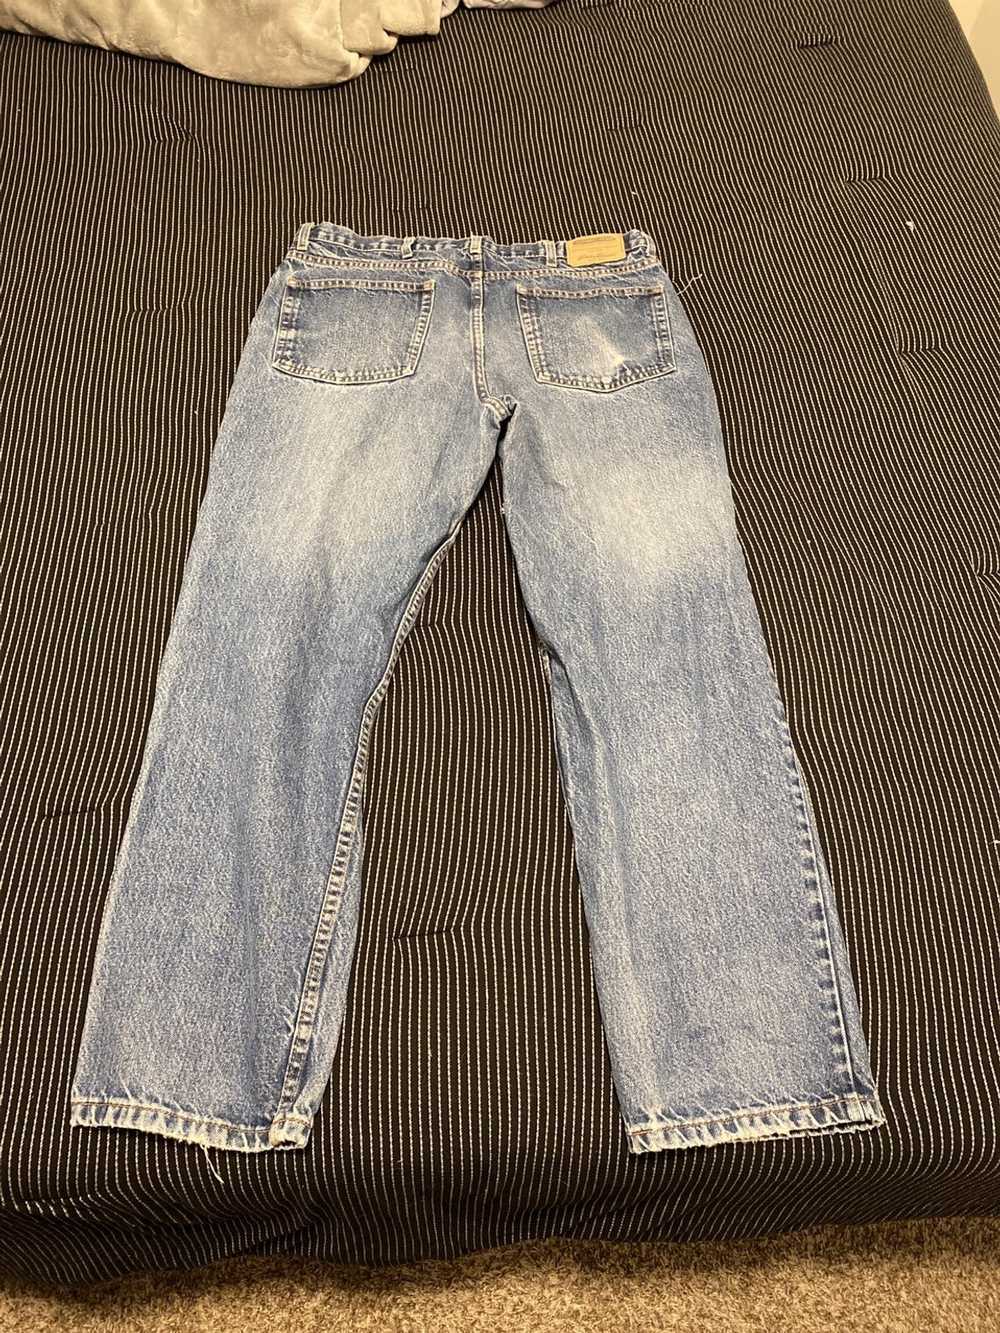 Eddie Bauer Denim jeans - image 2